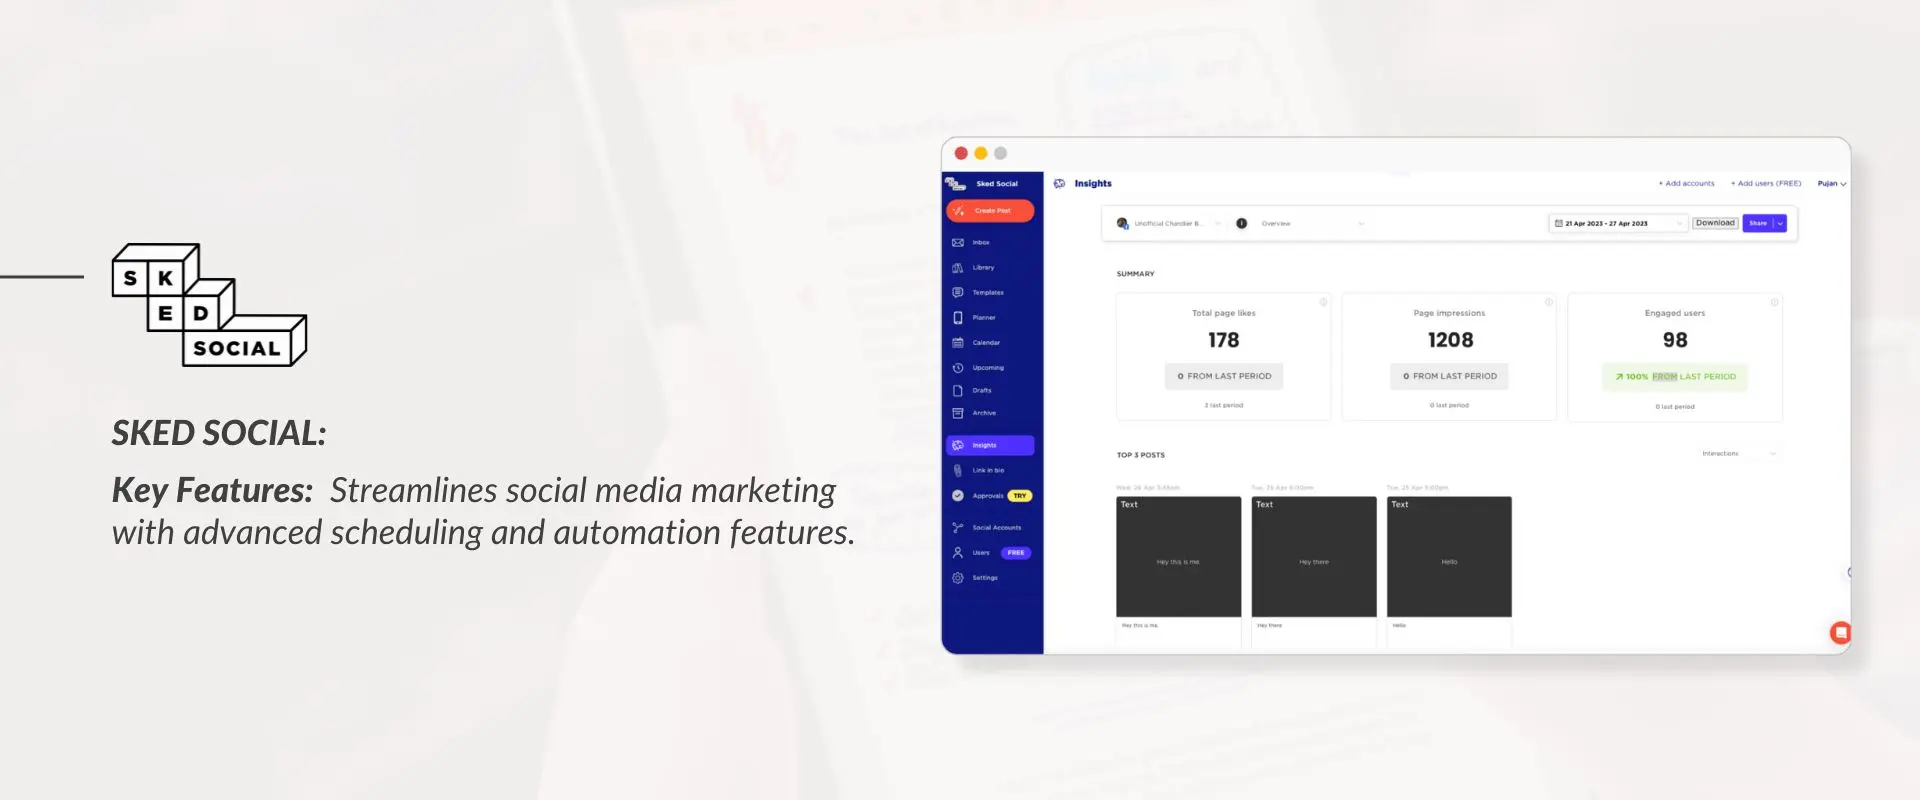 Sked Social Media Marketing Tool Interface